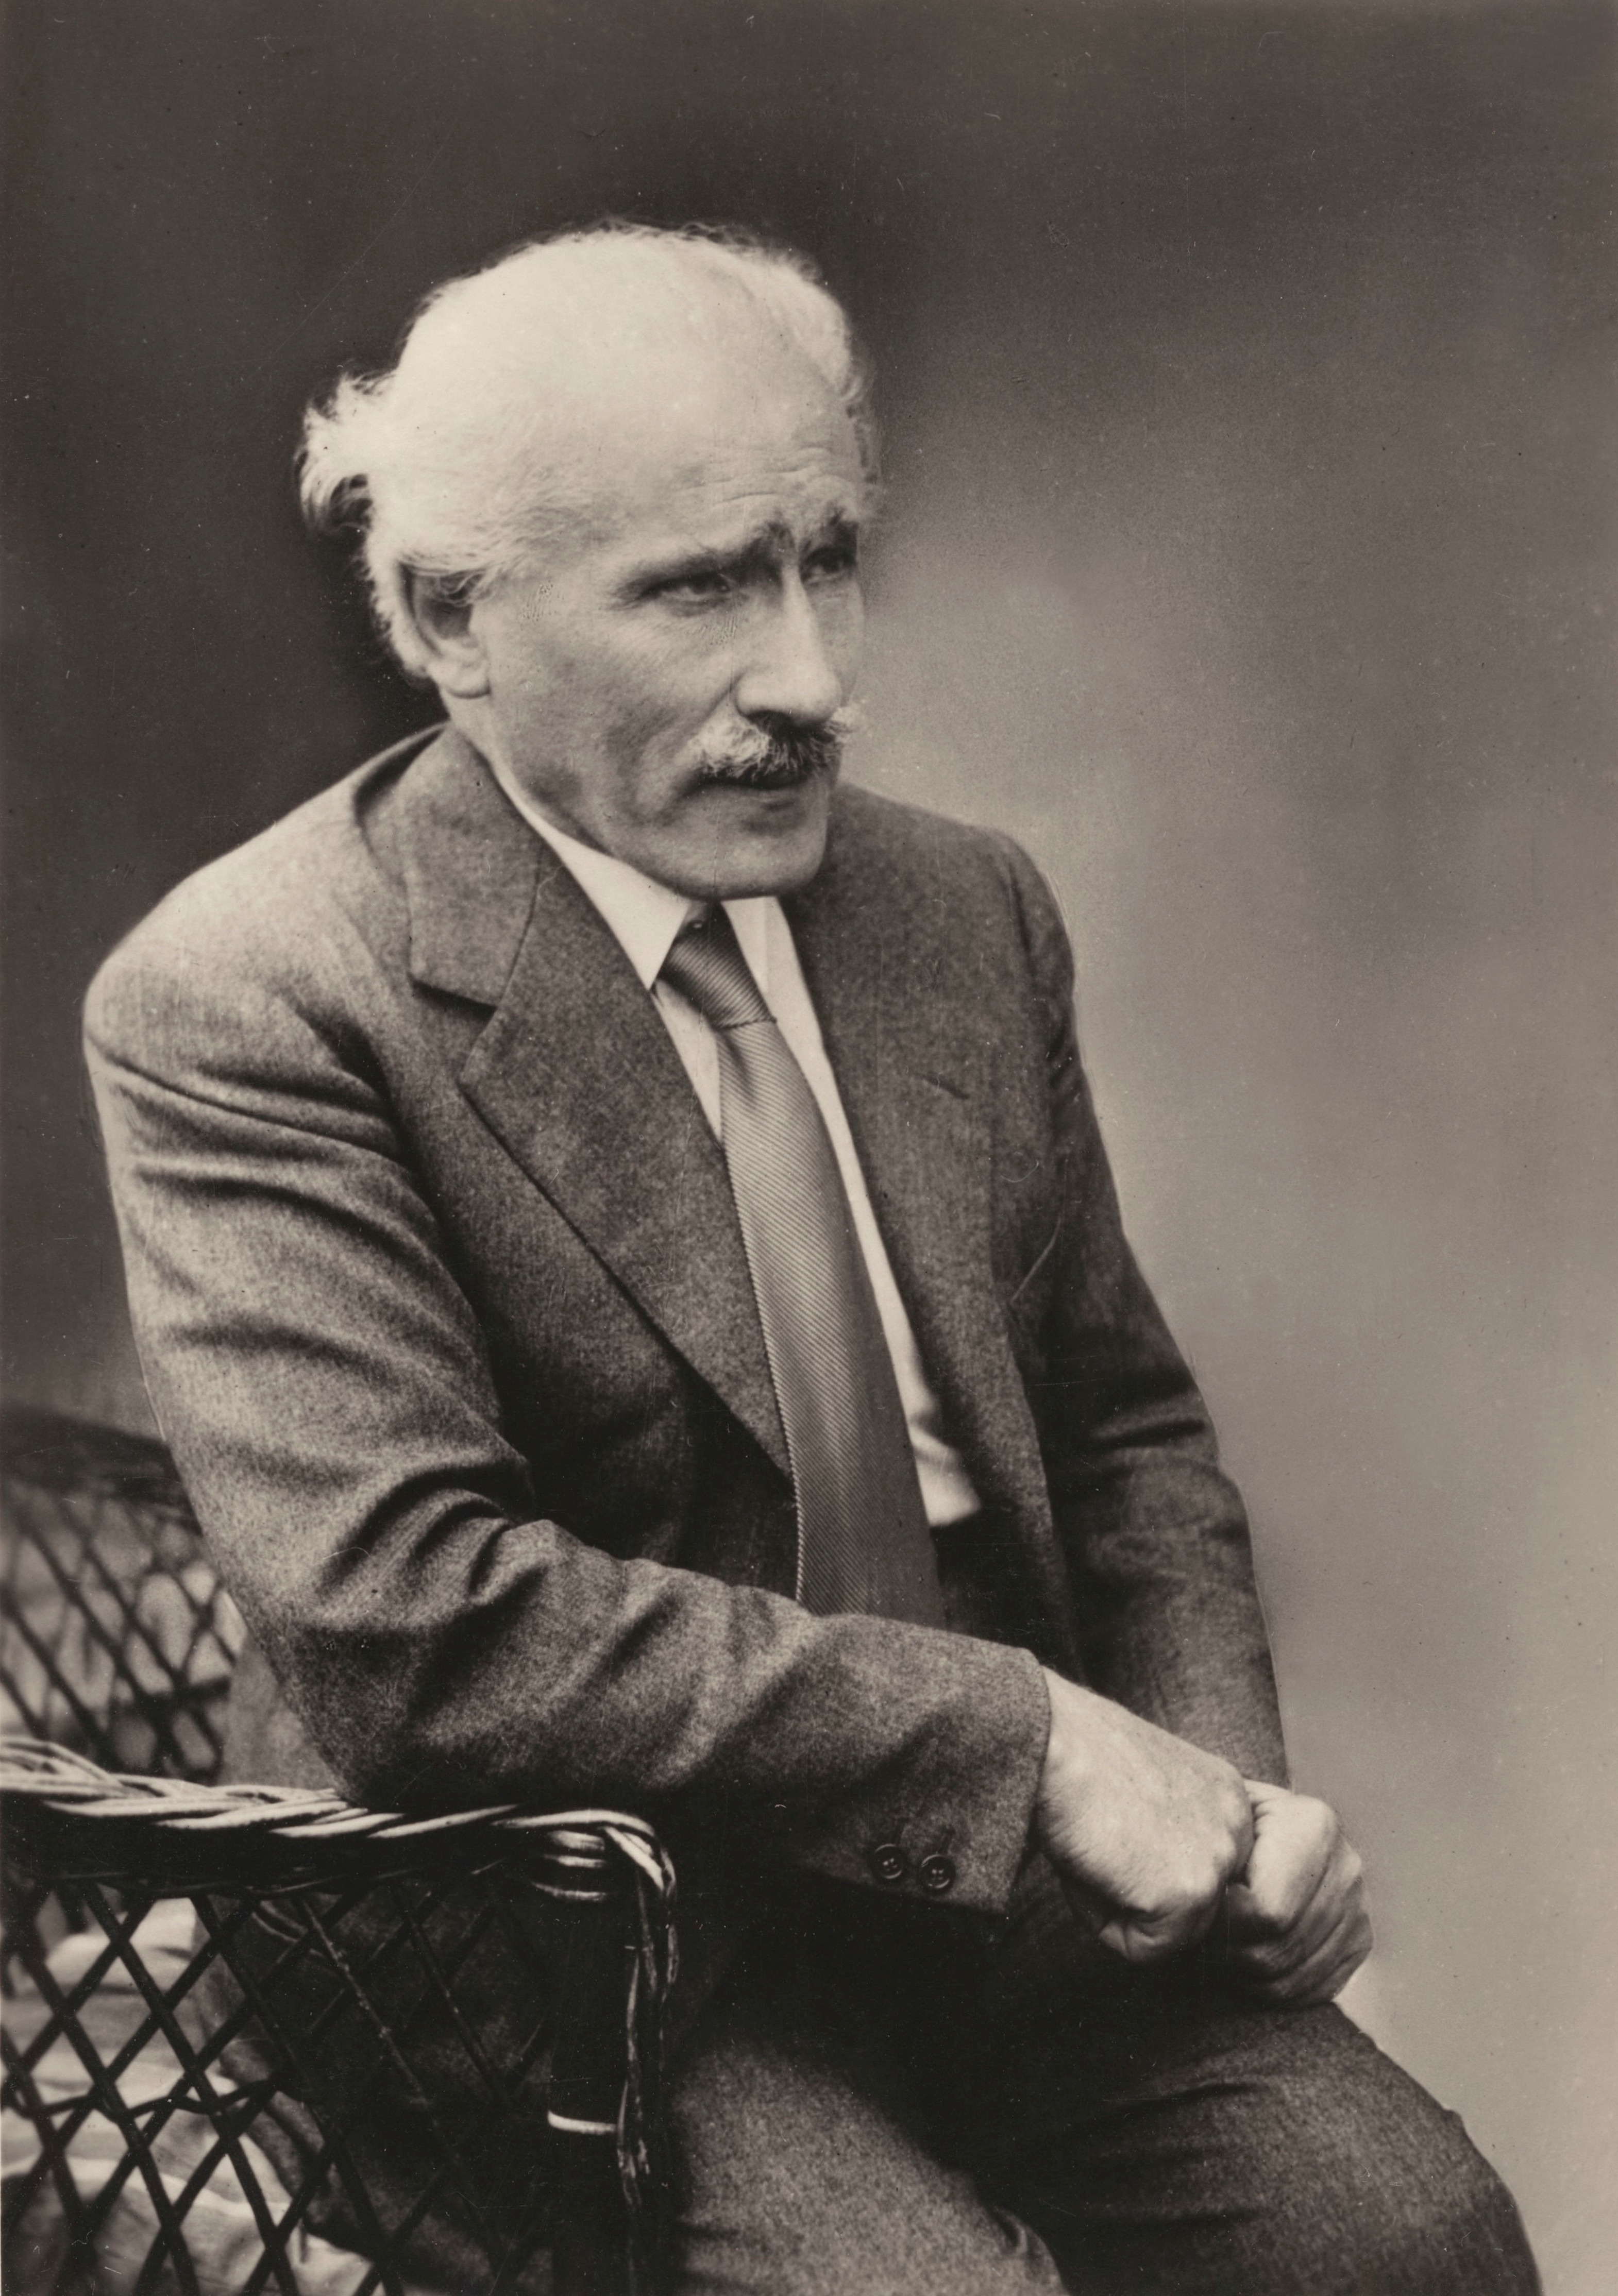 1920. Ritratto di Arturo Toscanini.